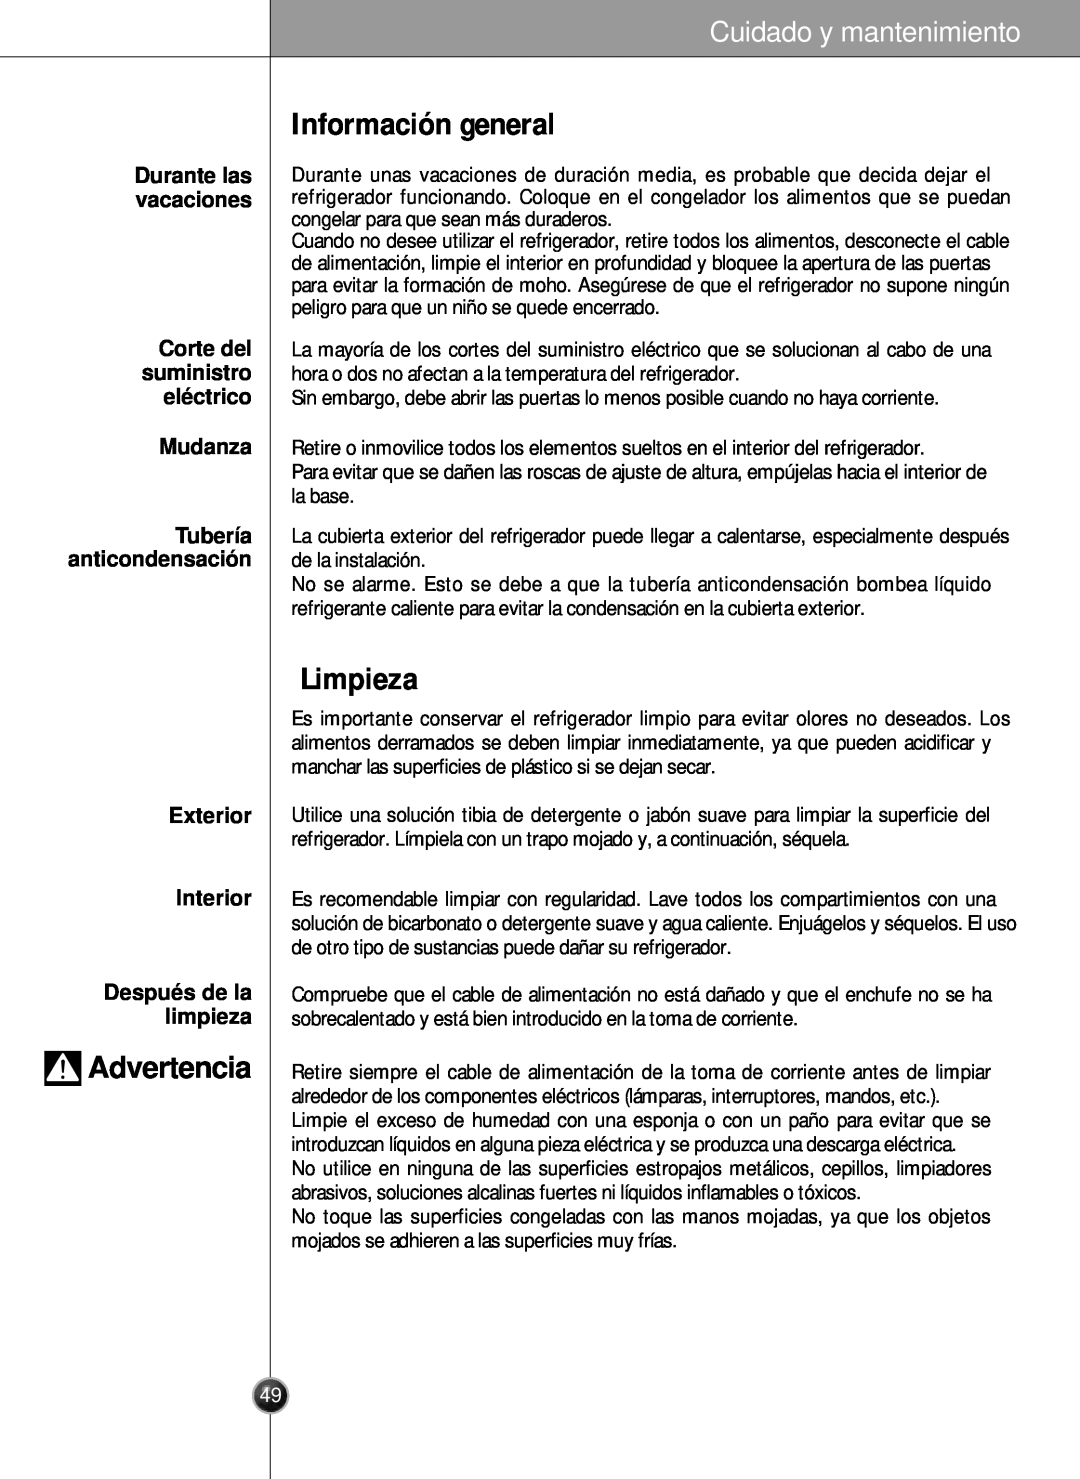 LG Electronics LSC26905 owner manual Información general, Limpieza, Corte del suministro elé ctrico Mudanza, Advertencia 